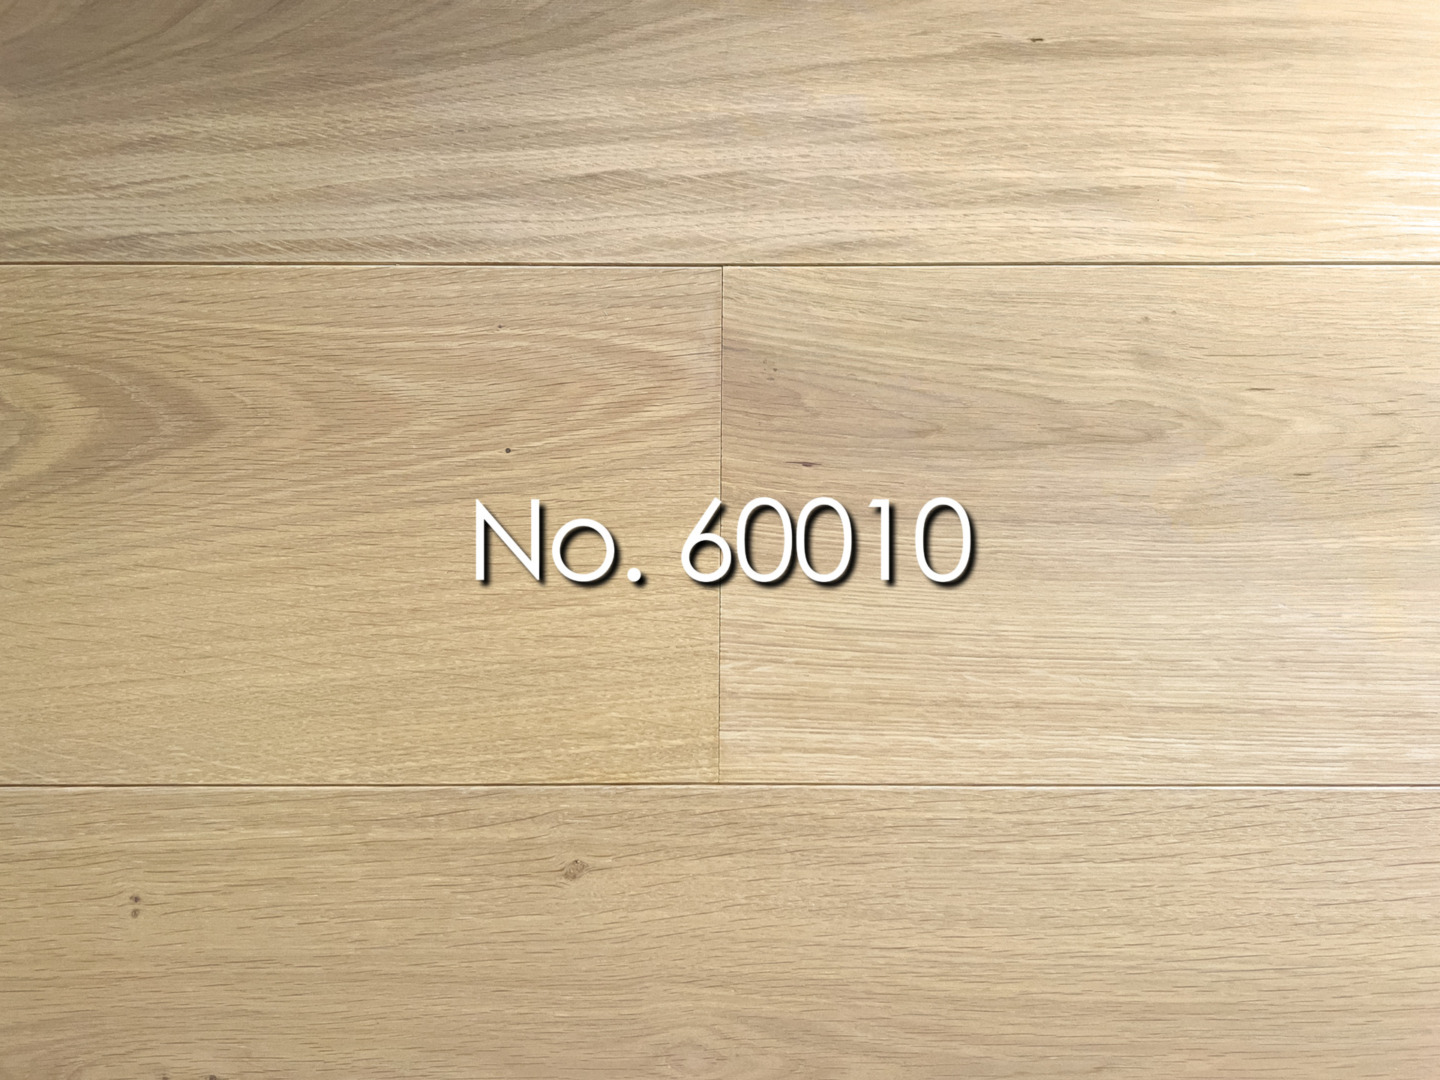 No. 60010